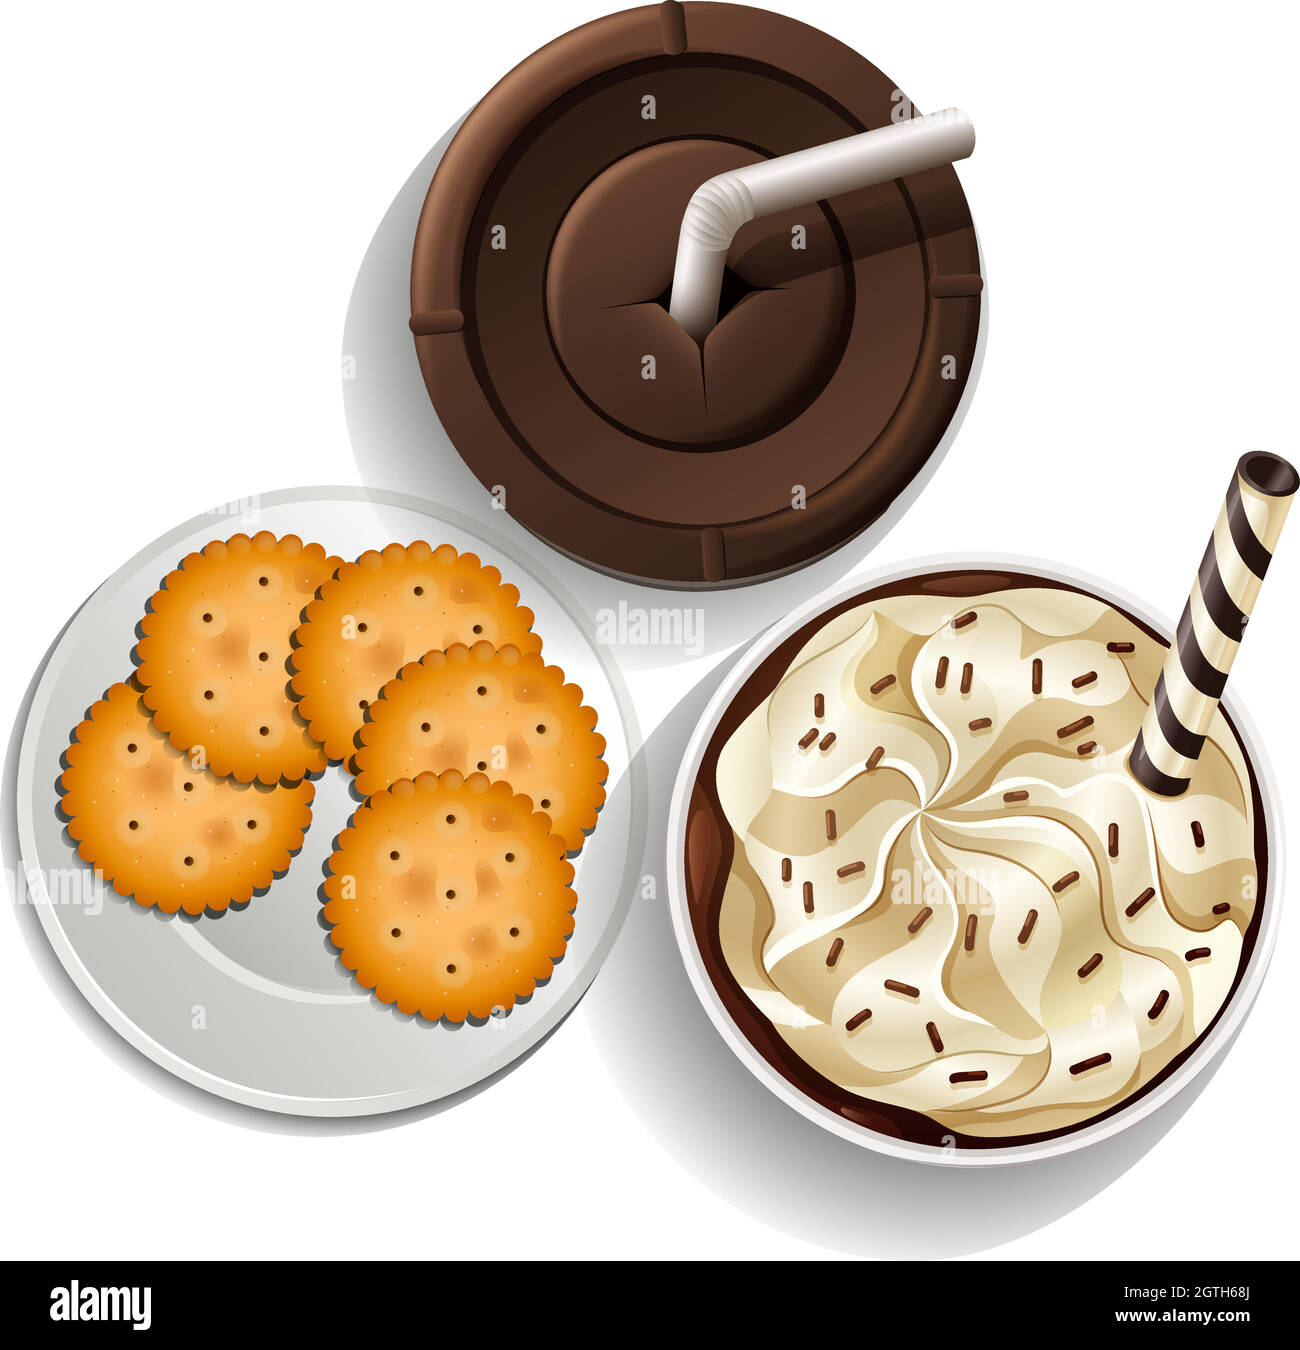 Bevande in tazze usa e getta e un piatto con biscotti Illustrazione Vettoriale